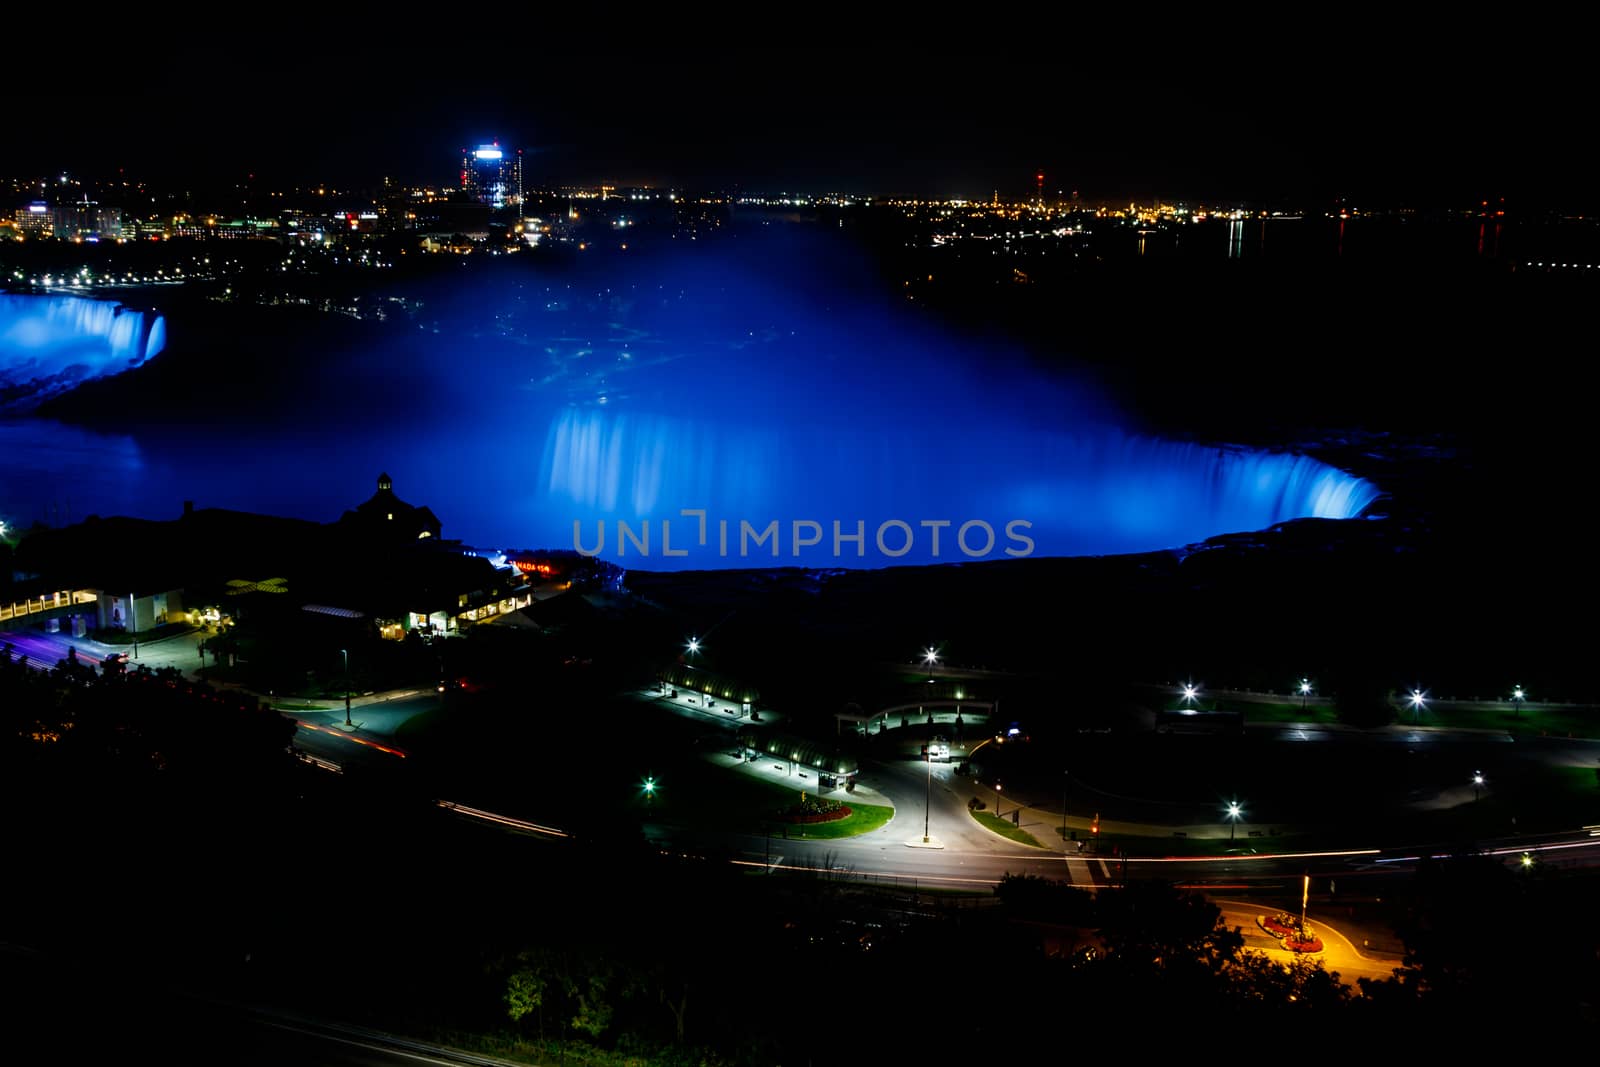 Fantastic Niagara Falls view with Colorful Lights at night, Canadian Falls, Ontario, Canada